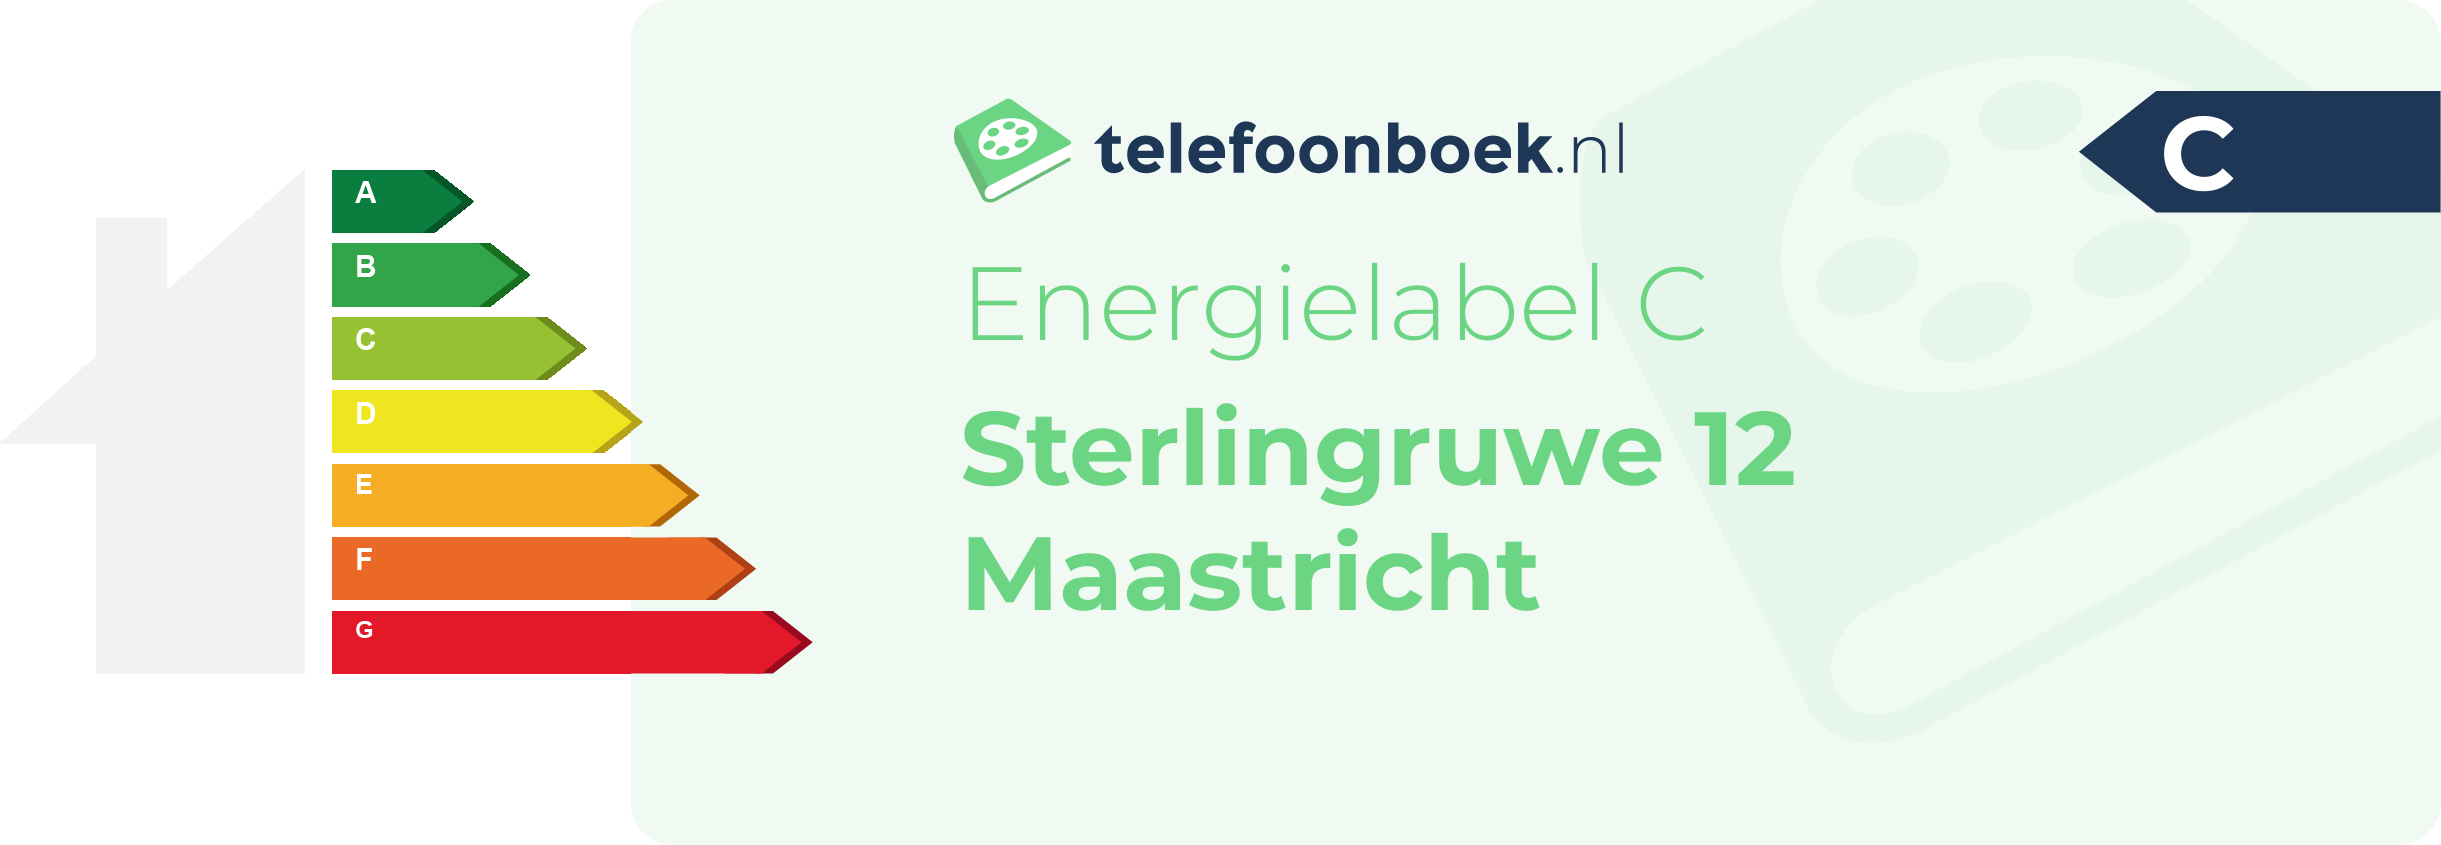 Energielabel Sterlingruwe 12 Maastricht